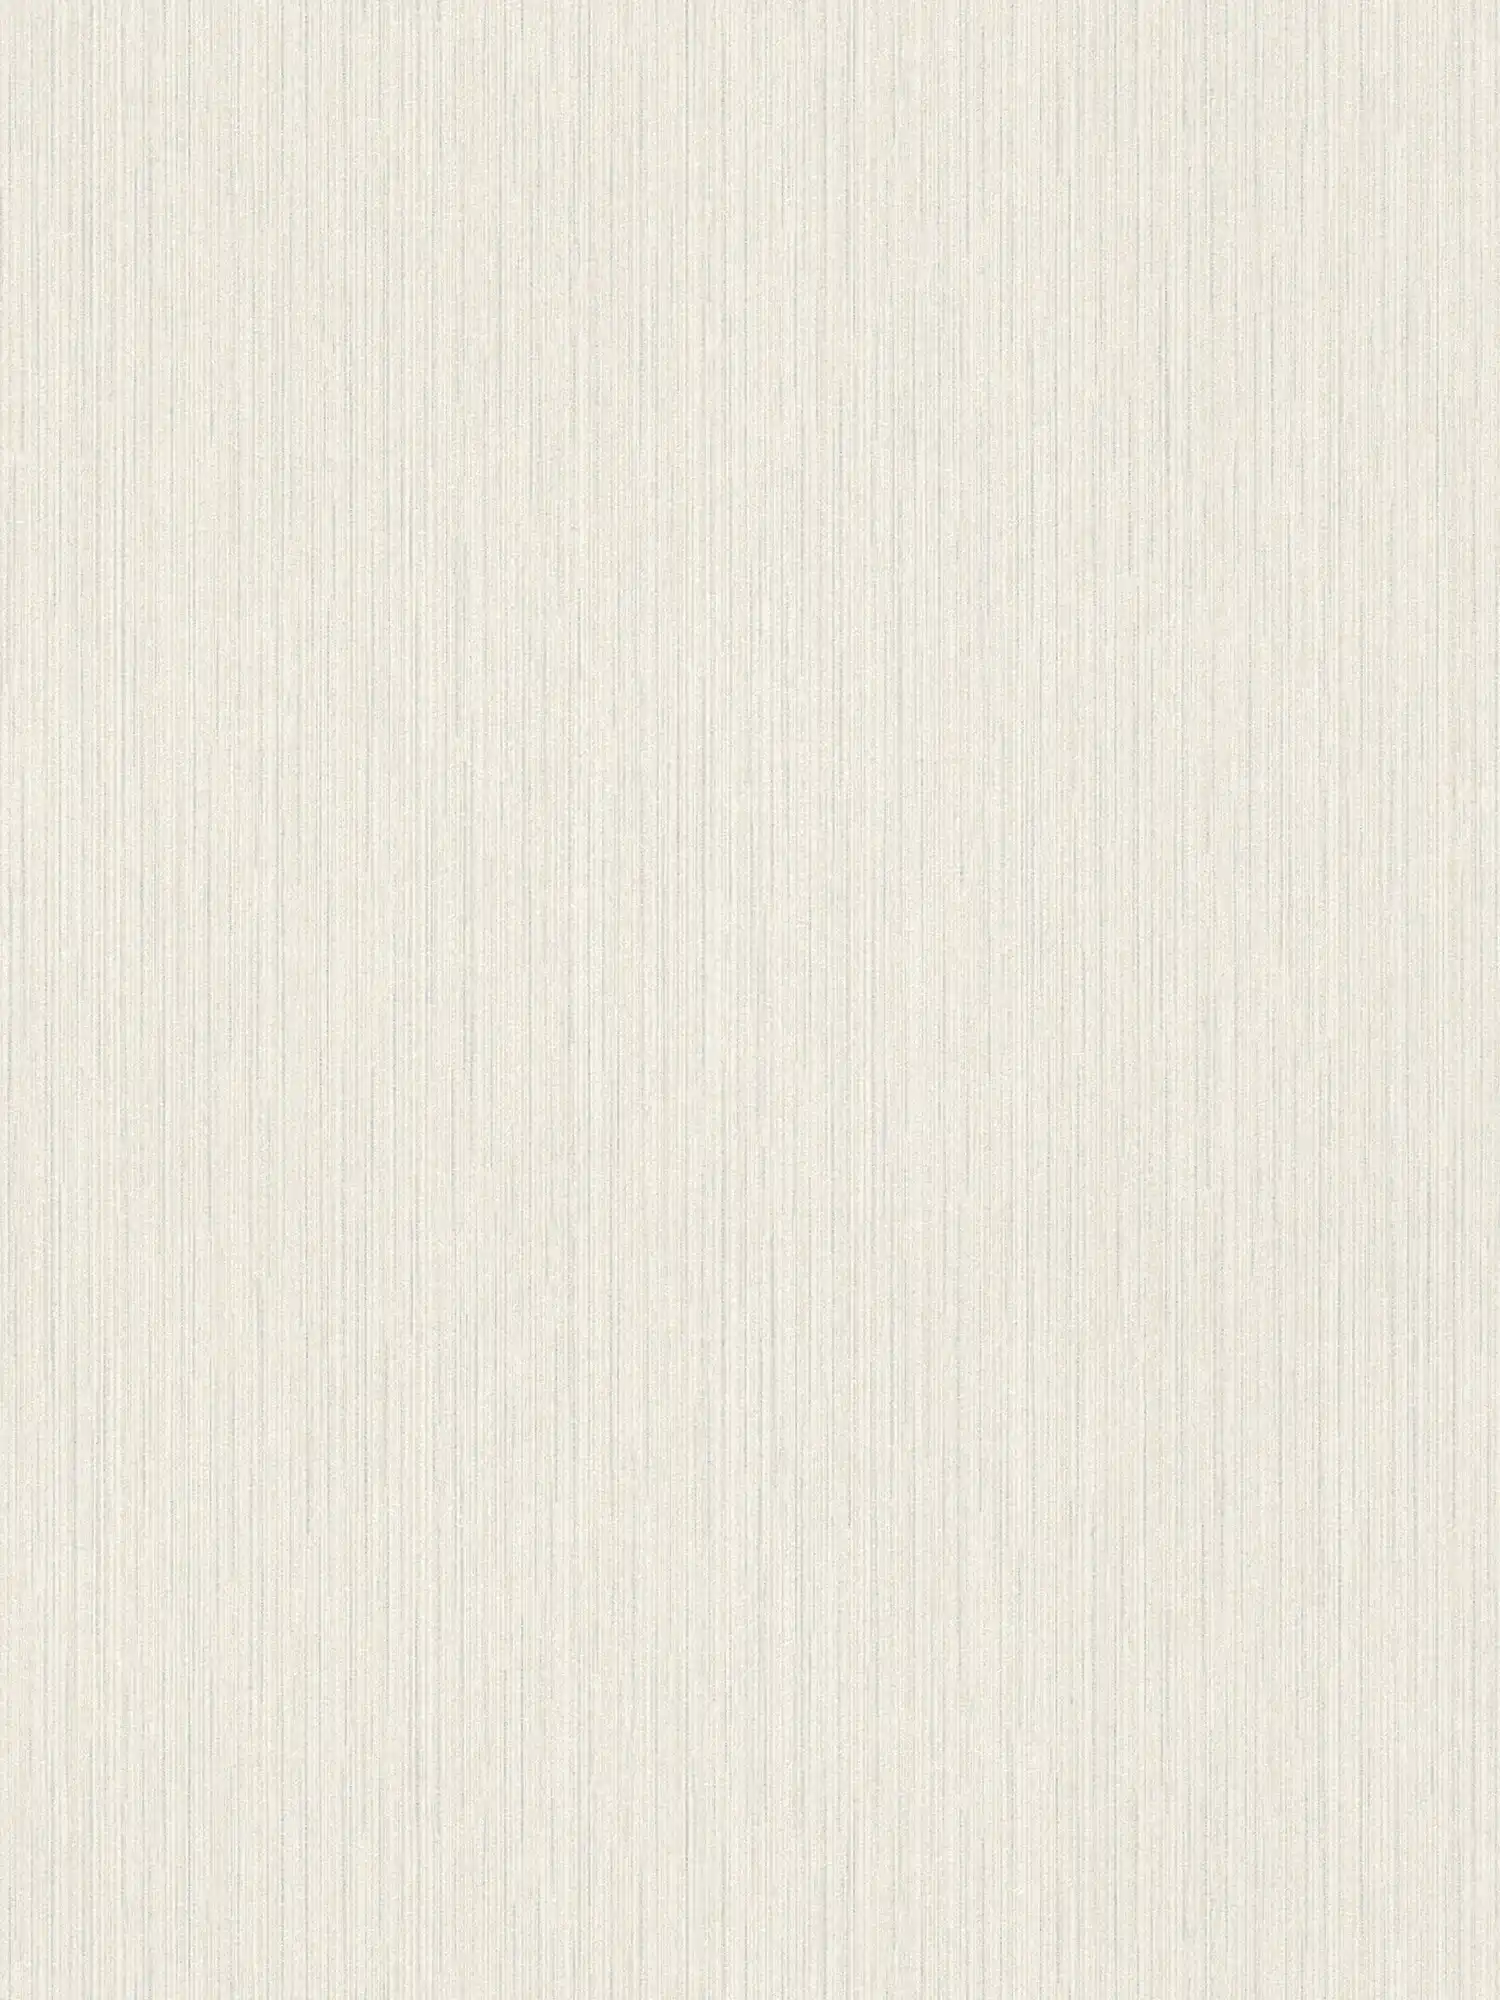         Glitzer Tapete mit liniertem Design & Wildseidenoptik – Weiß
    